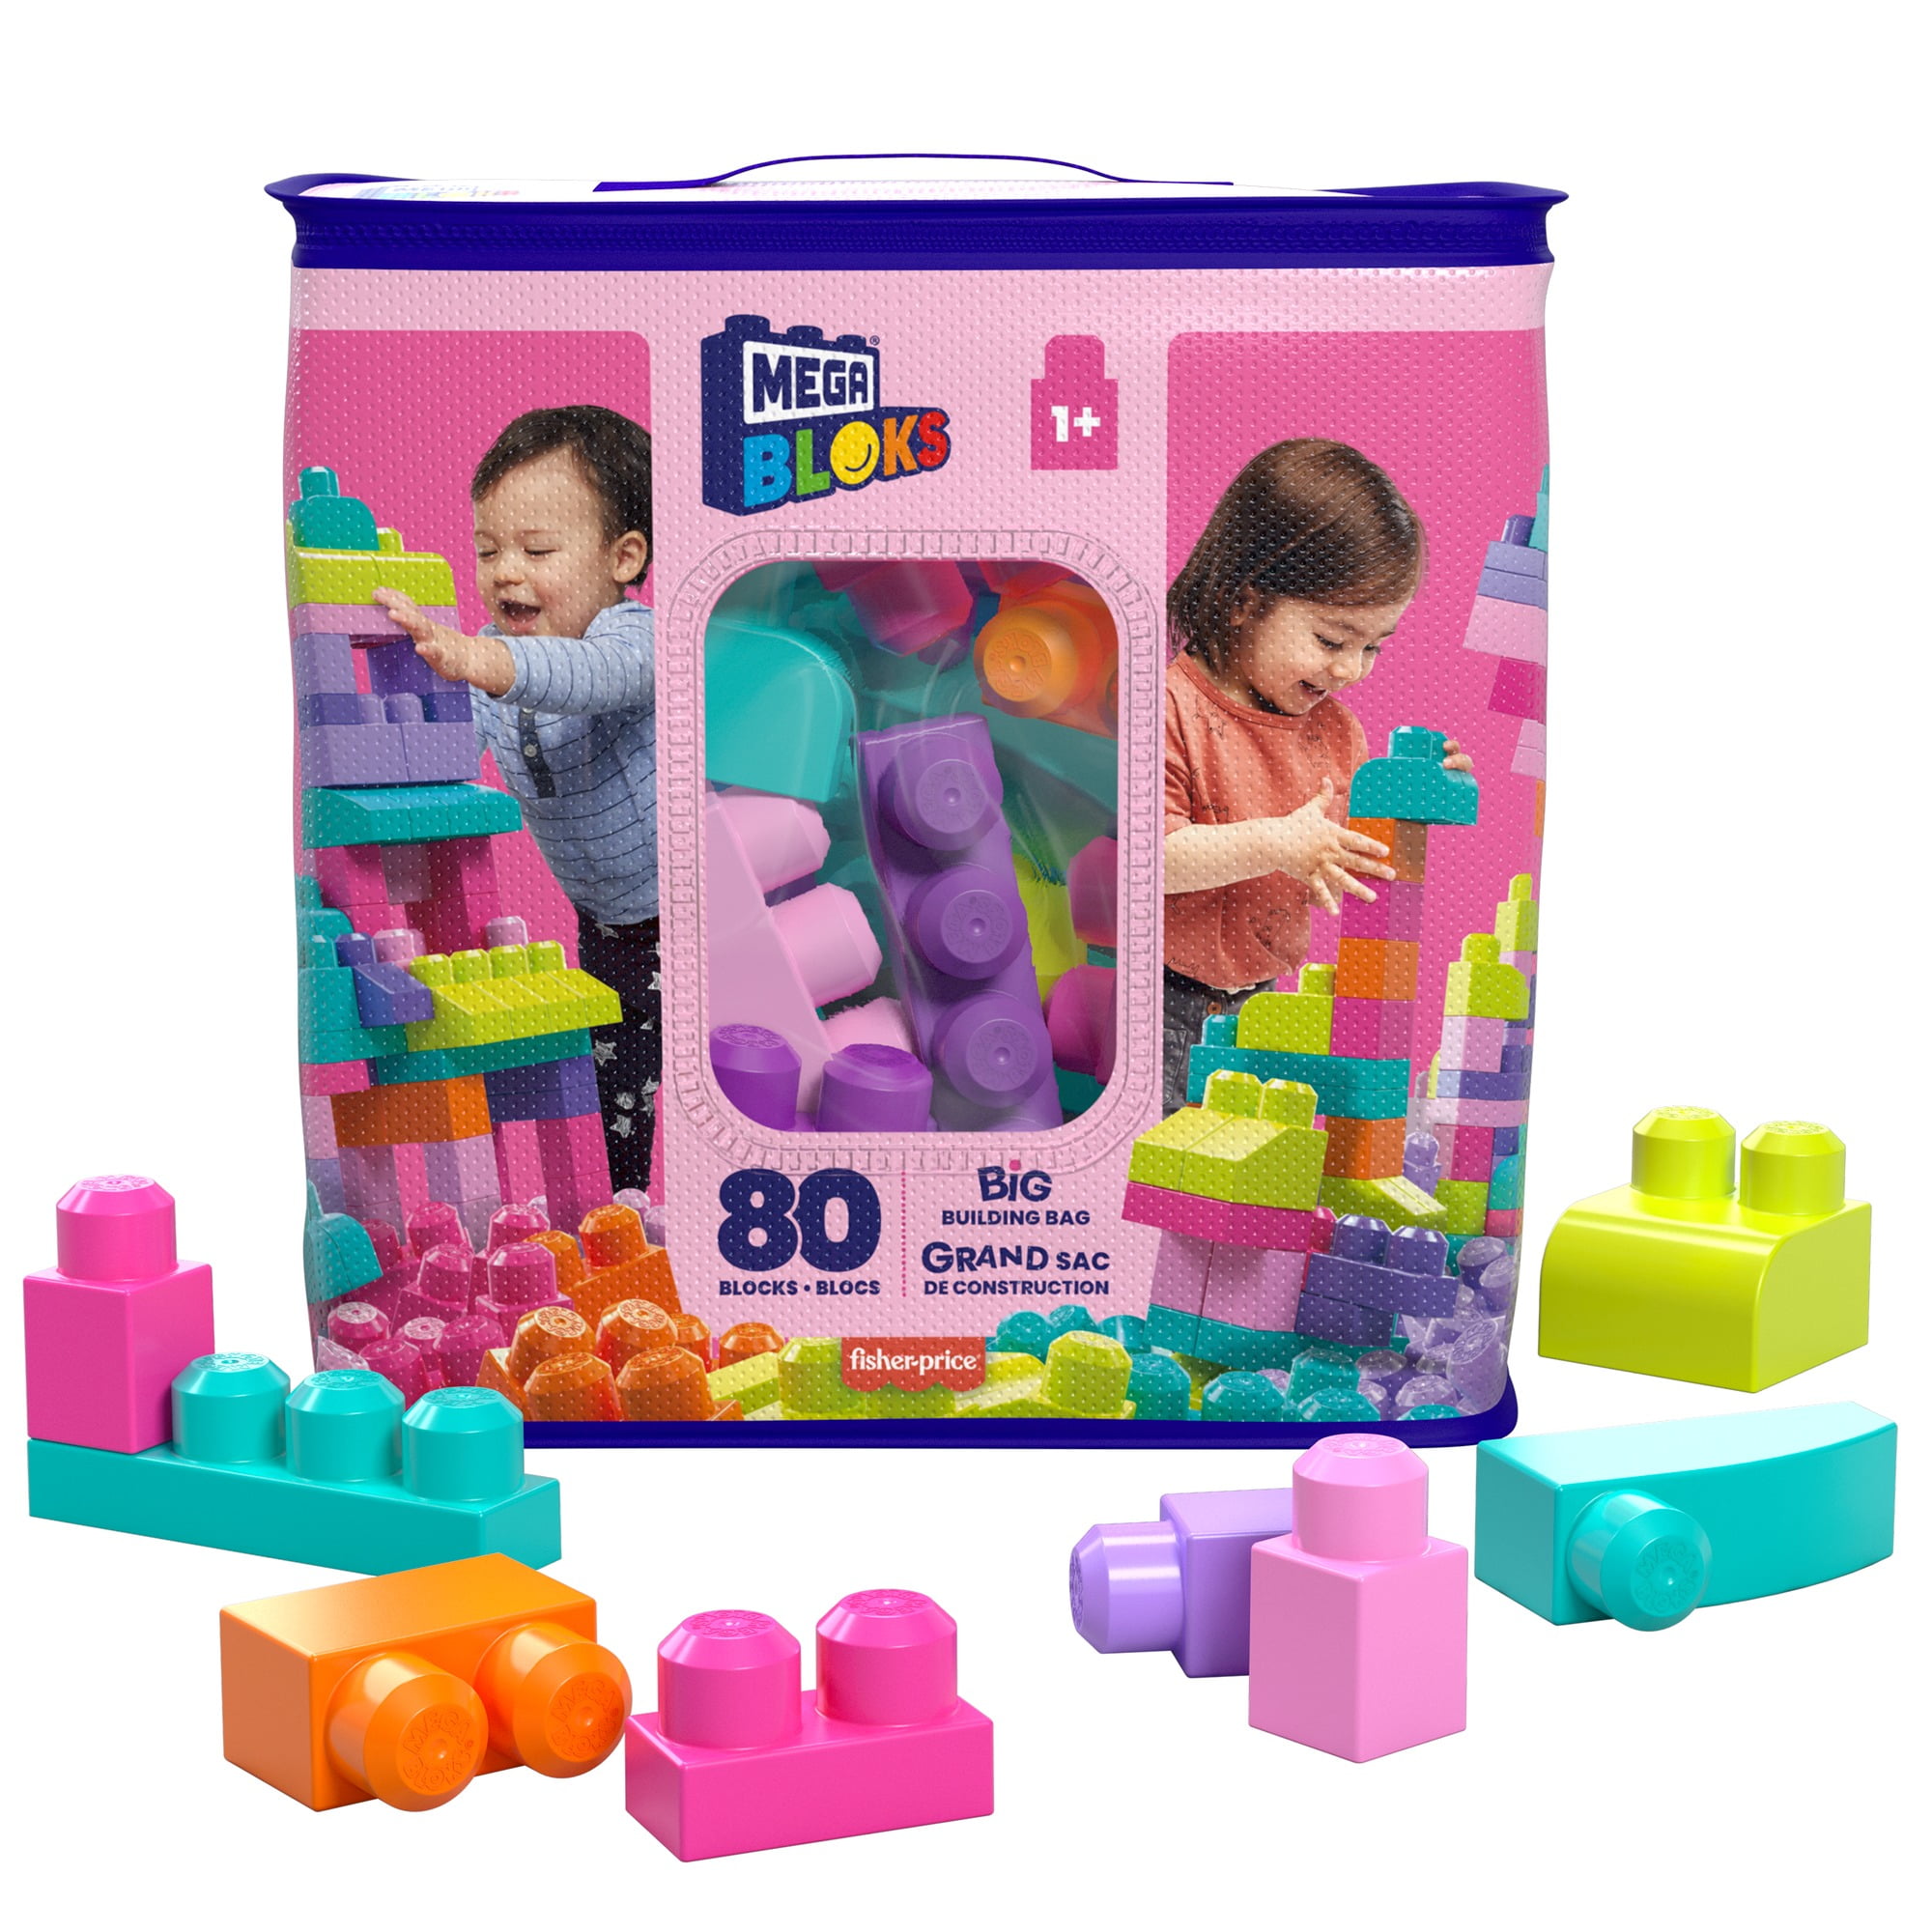 MEGA BLOKS Big Building Bag Toy Block Set (80 Blocks), Pink for Child 1Y+